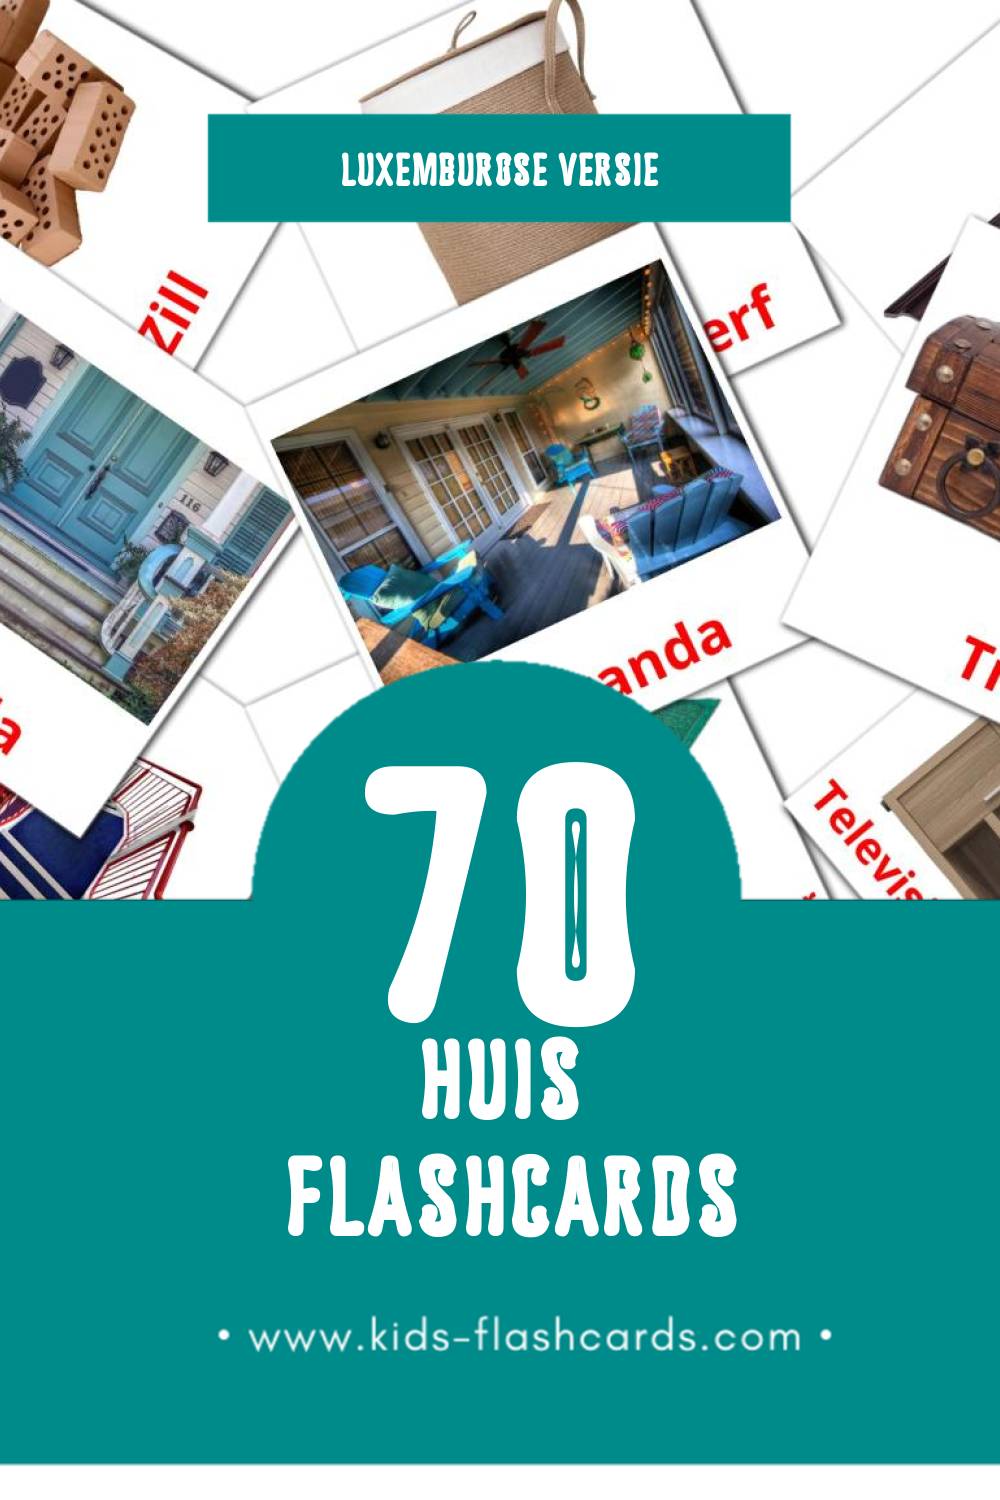 Visuele Doheem Flashcards voor Kleuters (70 kaarten in het Luxemburgs)